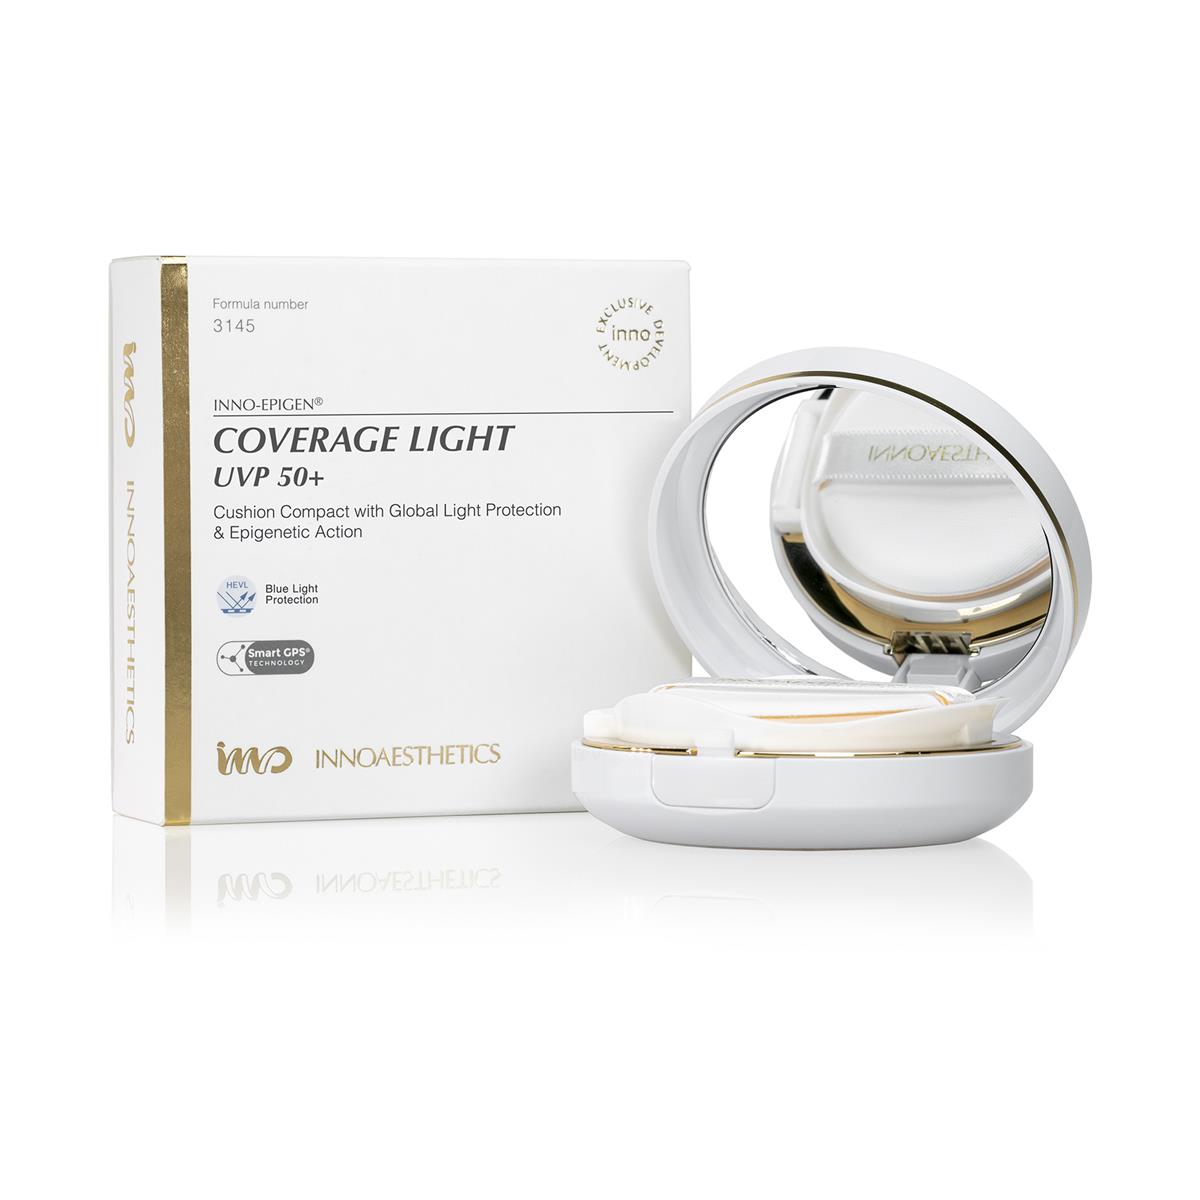 INNO-DERMA Epigen Coverage Light SPF 50 14 g